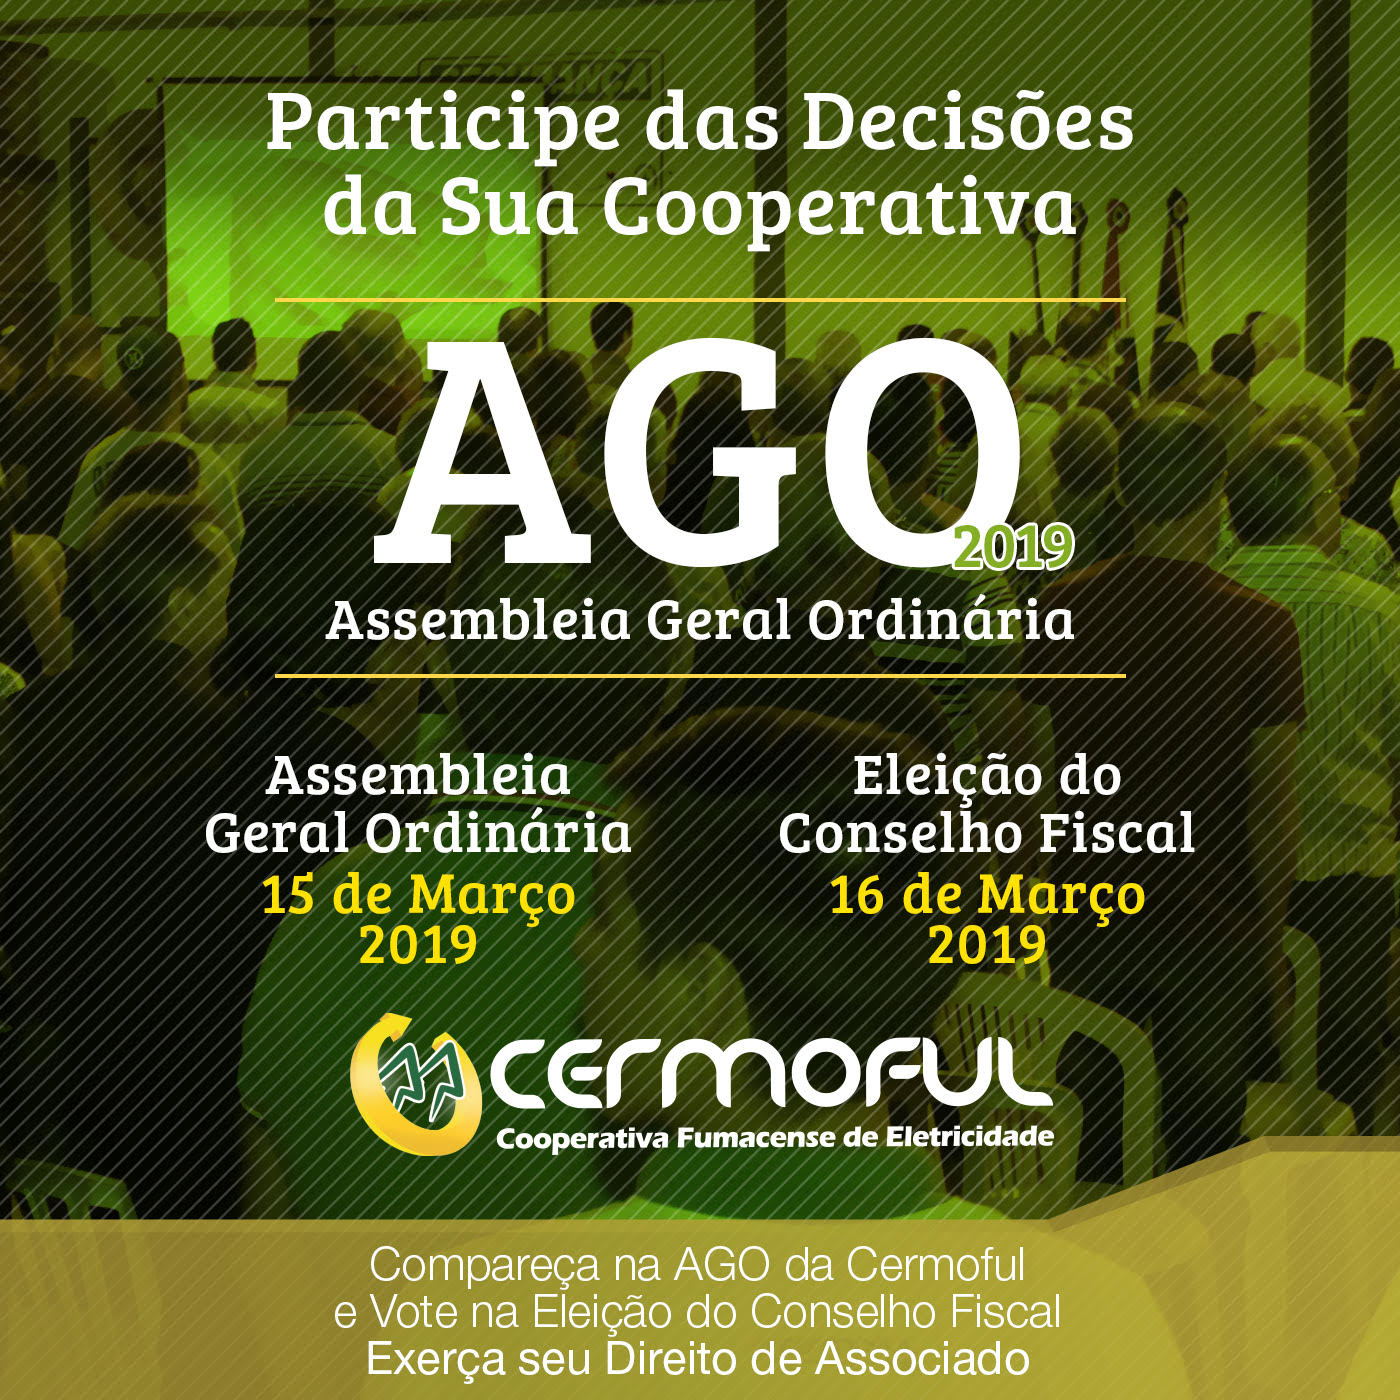 Cermoful lança edital para Assembleia Geral